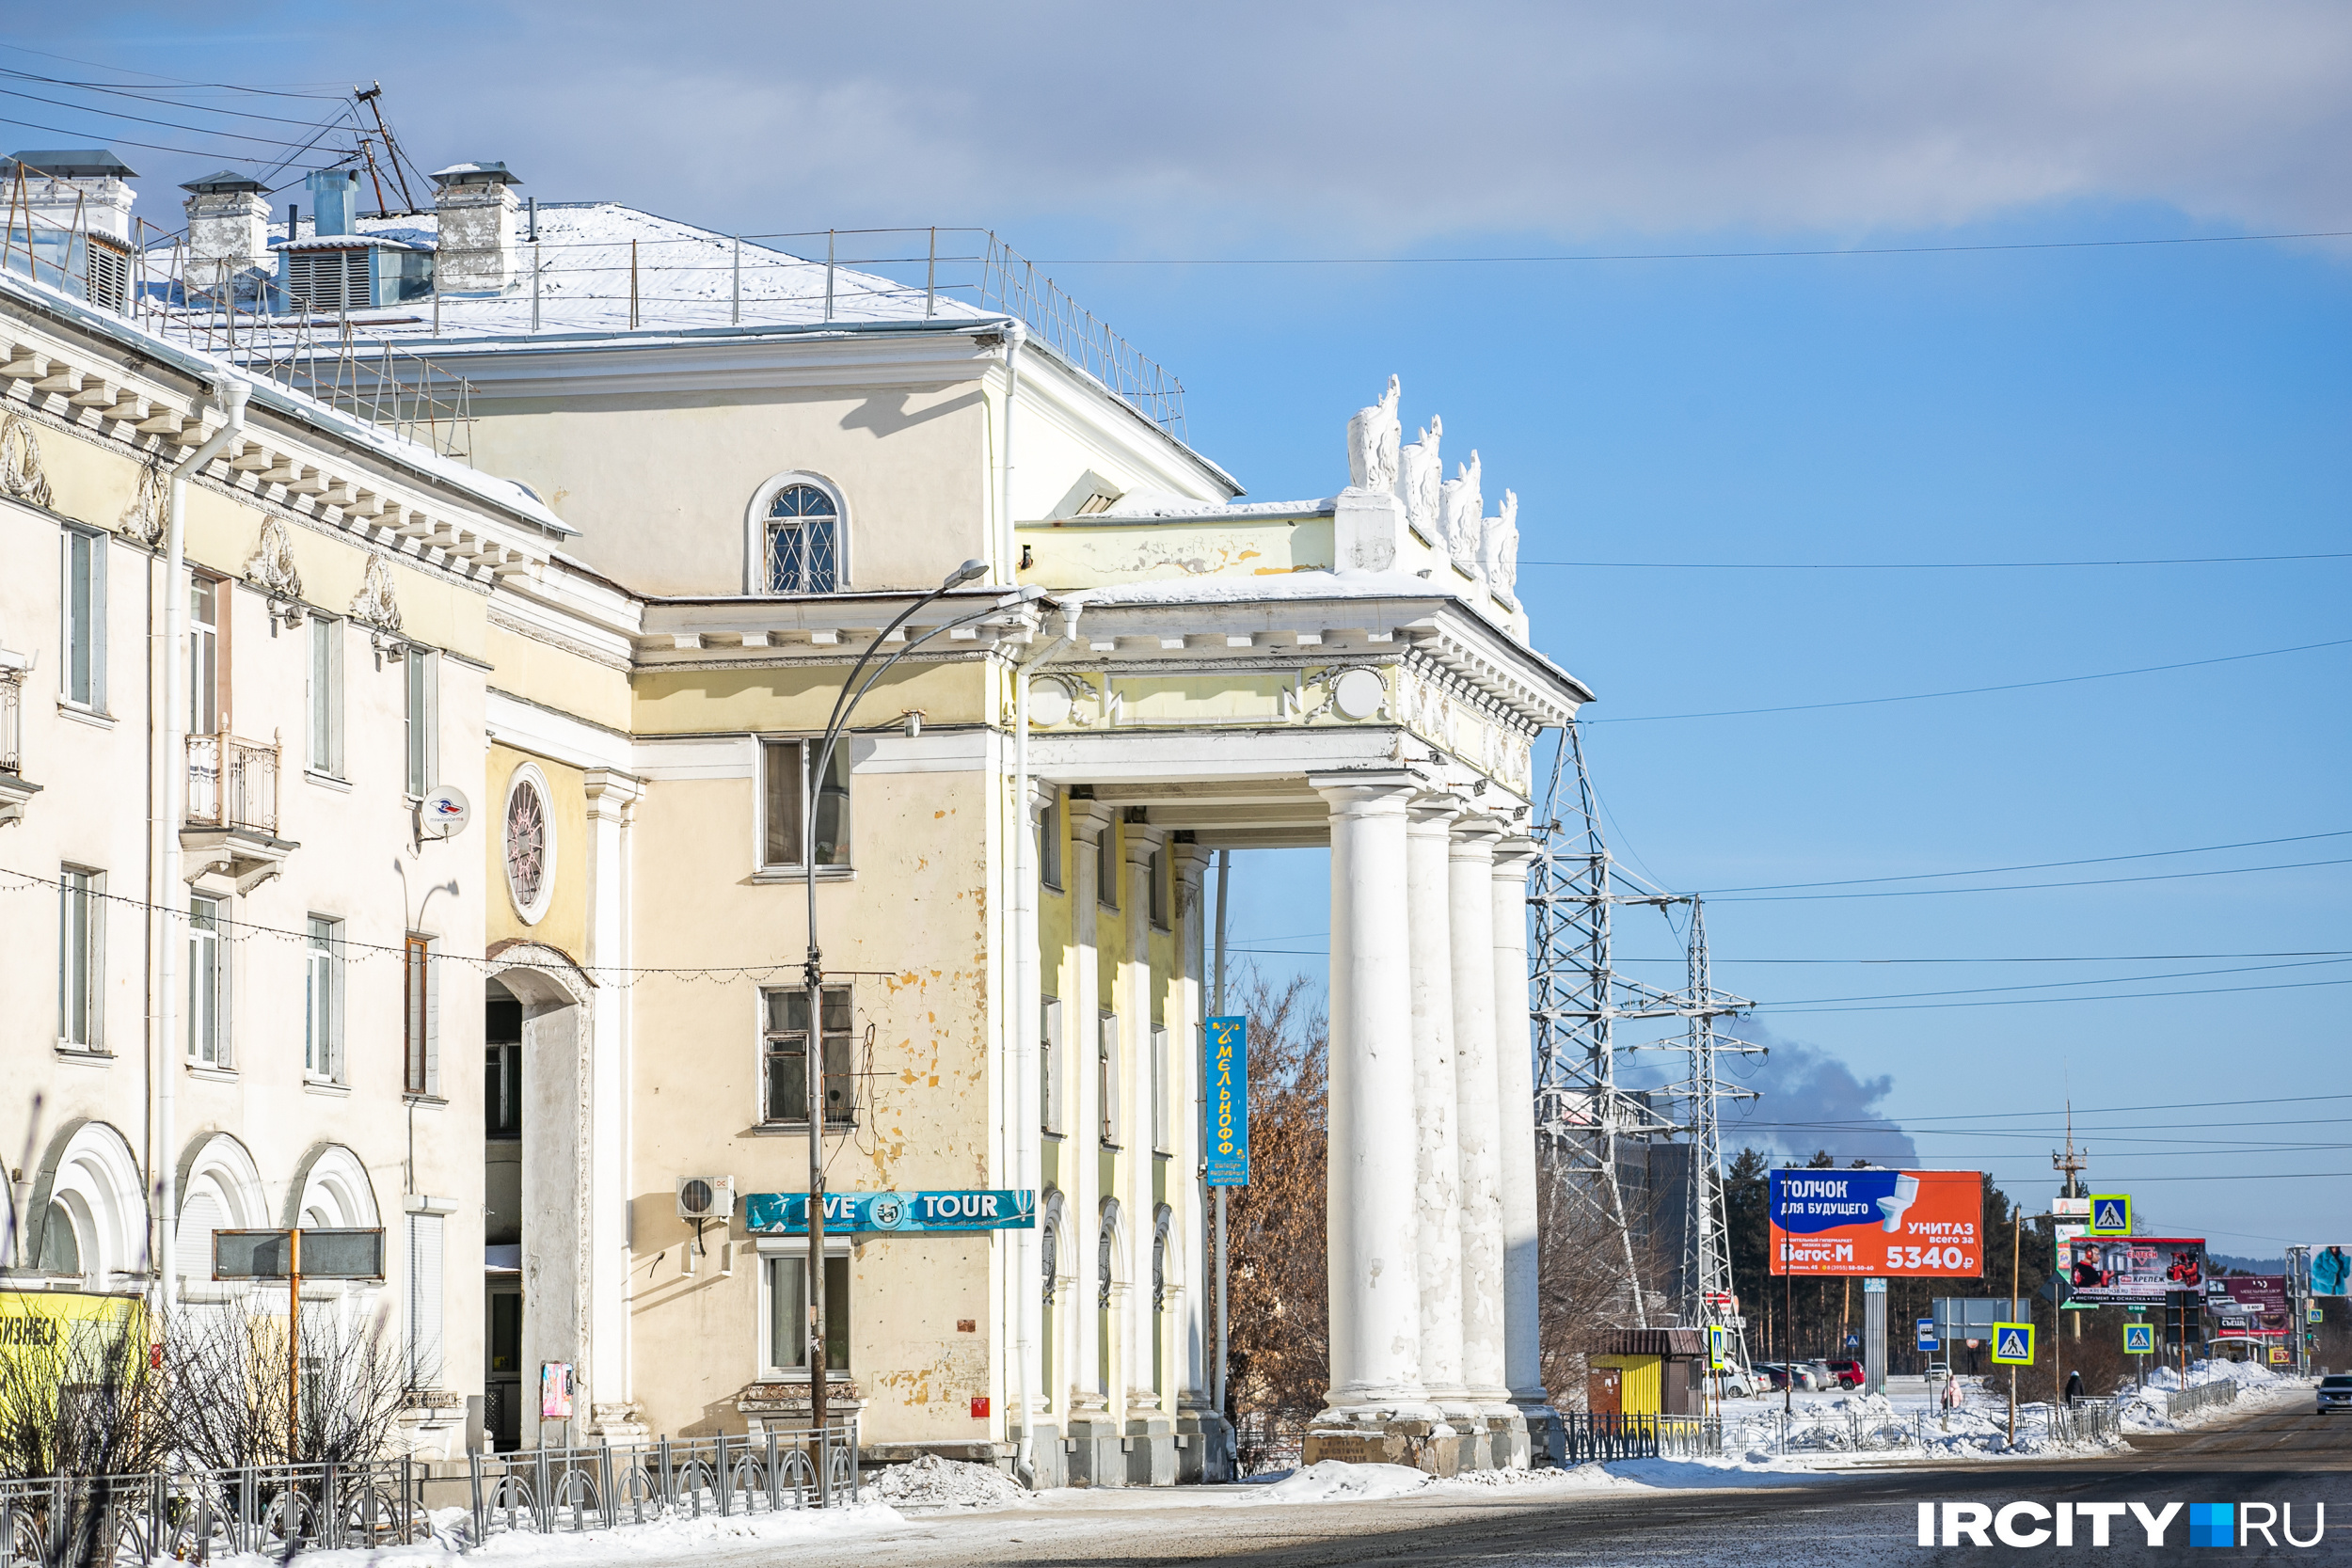 Ангарские ворота — это настоящий символ города. Два симметричных здания как будто открывают вход в город для тех, кто заезжает в него со стороны железнодорожного вокзала